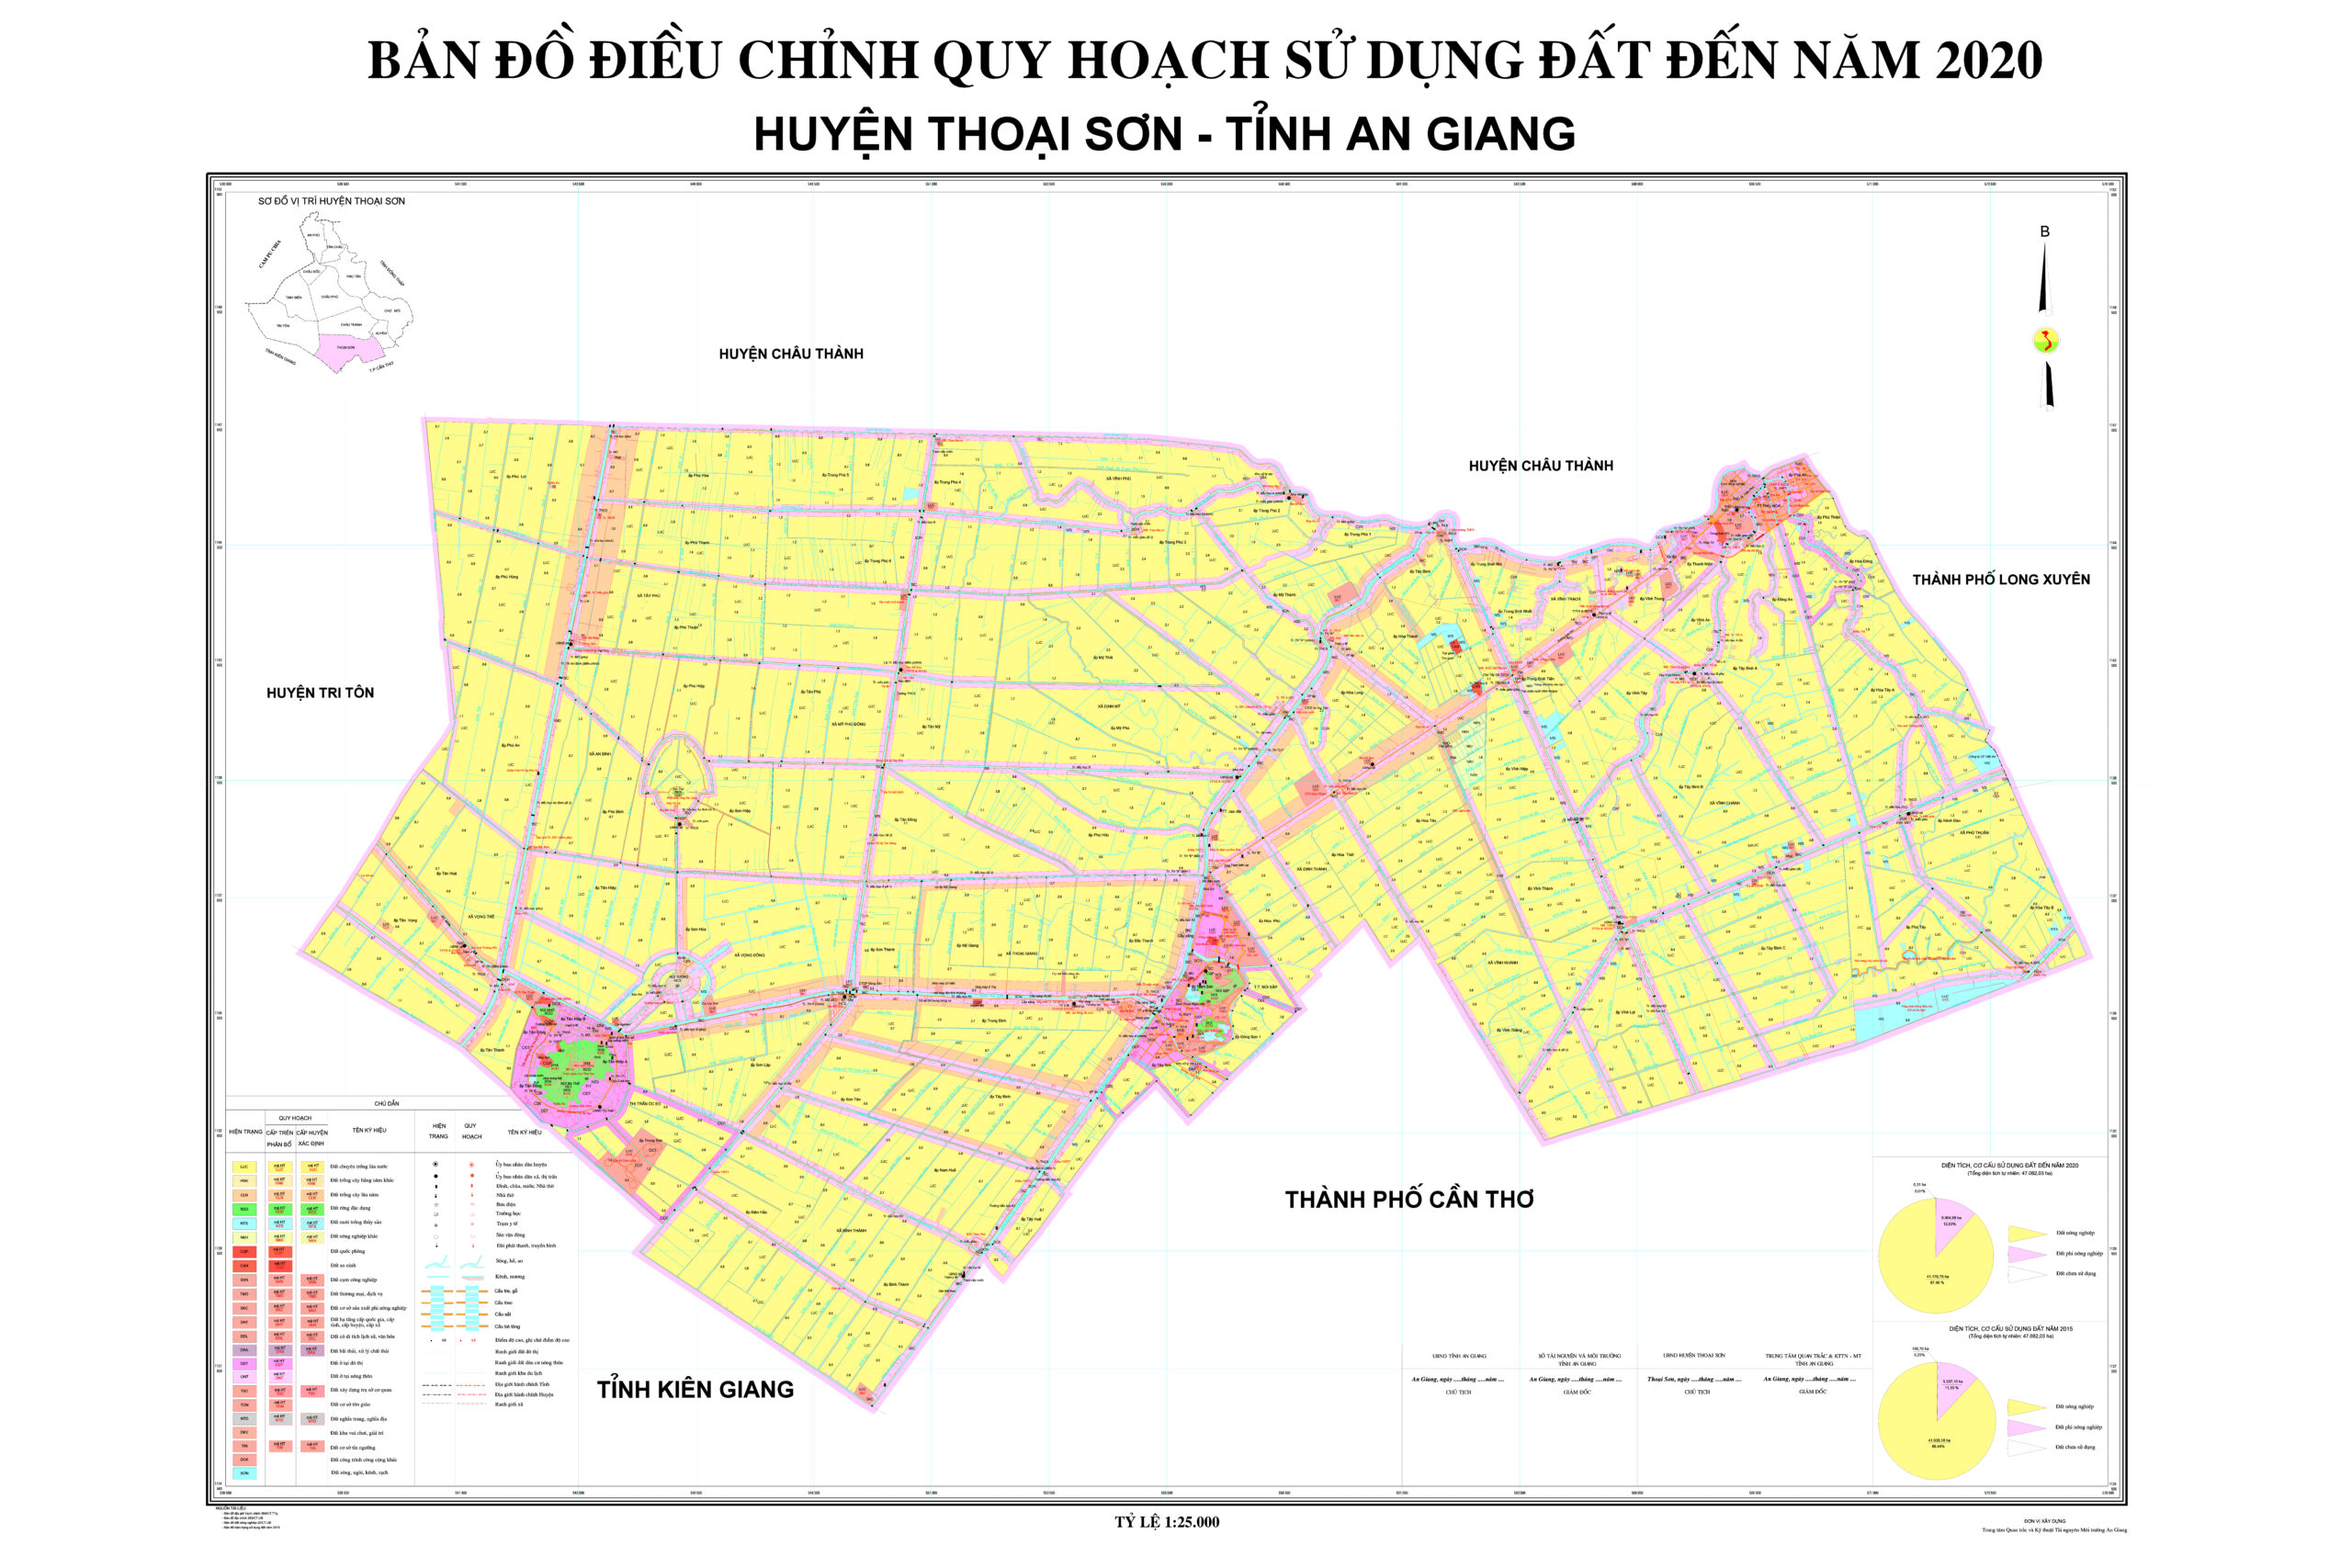 Bản đồ hành chính huyện Thoại Sơn
Hãy xem bản đồ hành chính huyện Thoại Sơn được cập nhật mới nhất để khám phá vùng đất đầy tiềm năng này. Với các tuyến đường mới và các khu công nghiệp đang được xây dựng, Thoại Sơn đang trở thành thị trấn phát triển nhanh chóng.